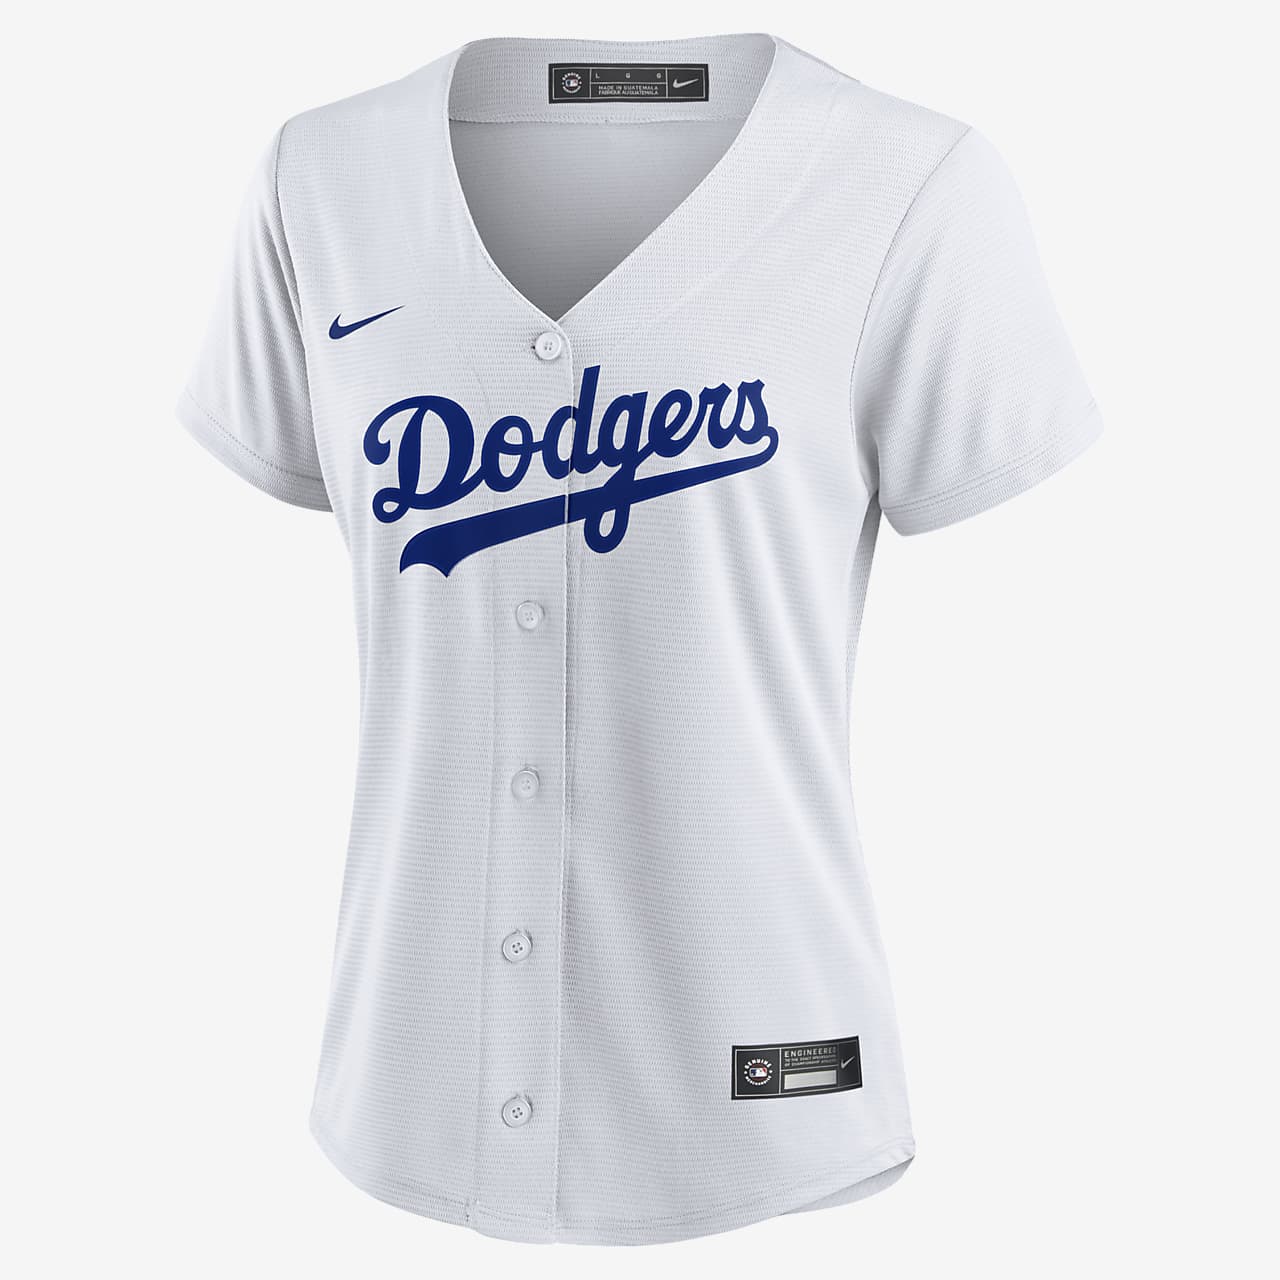 Jersey de para mujer Los Dodgers. Nike.com